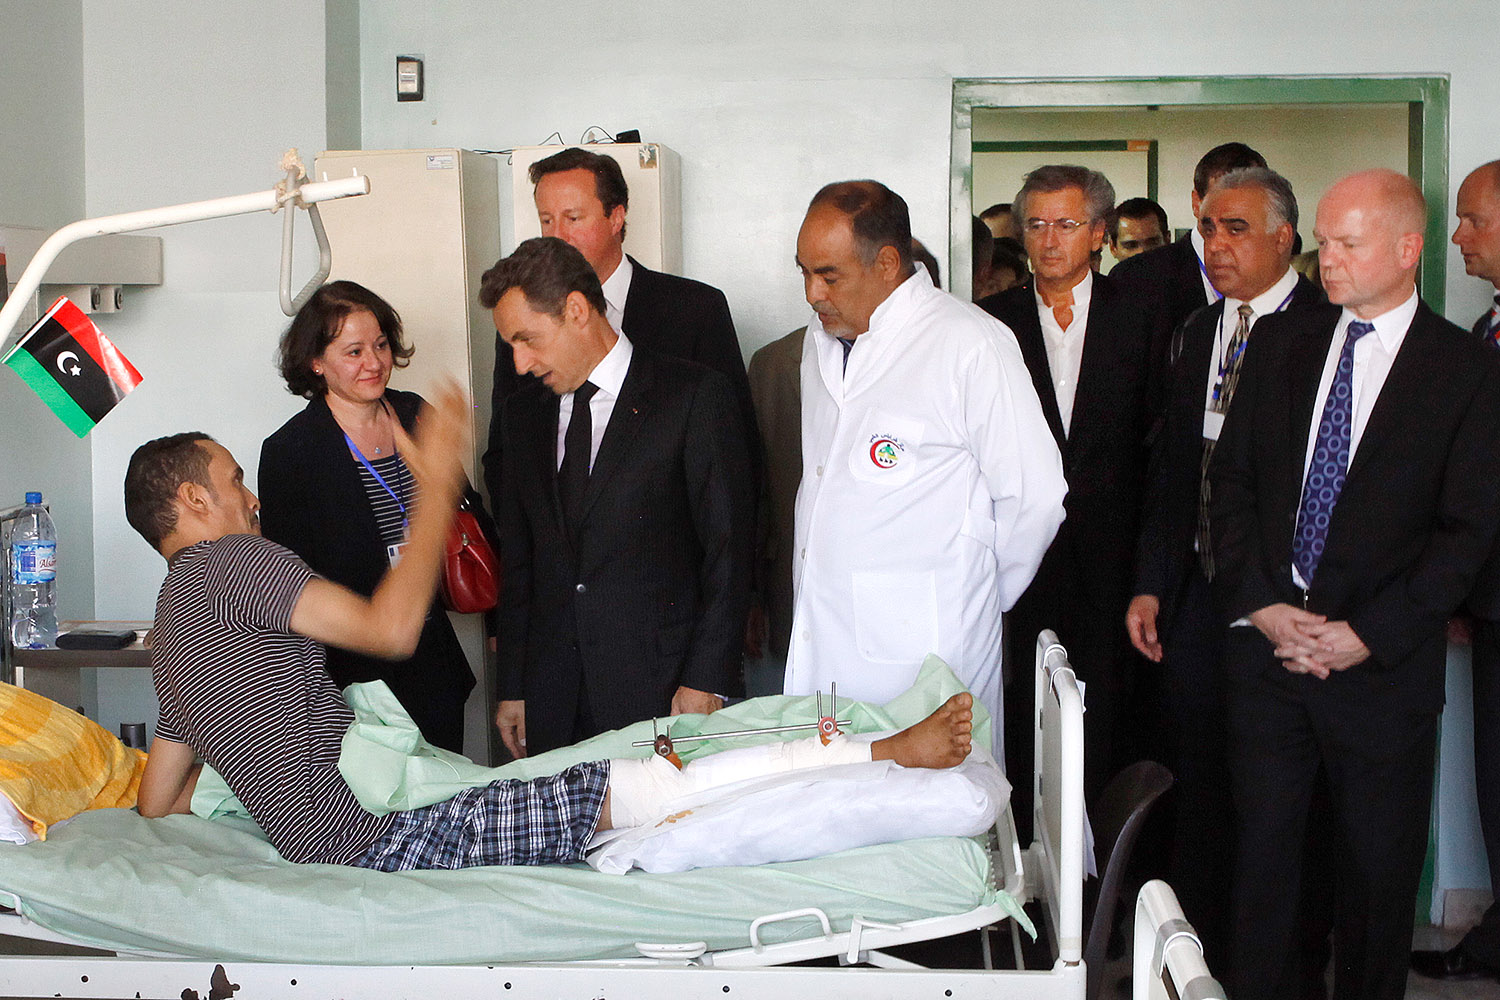 Bernard-Henri Lévy accompagne Nicolas Sarkozy et James Cameron à l'hôpital de Tripoli, rendre visite aux victimes de la barbarie kadhafiste. Il y a également un médecin et le personnel des hommes politiques. Un hommes est allongé sur son lit d'hopital, un a un plâtre et du métal dans la jambe.